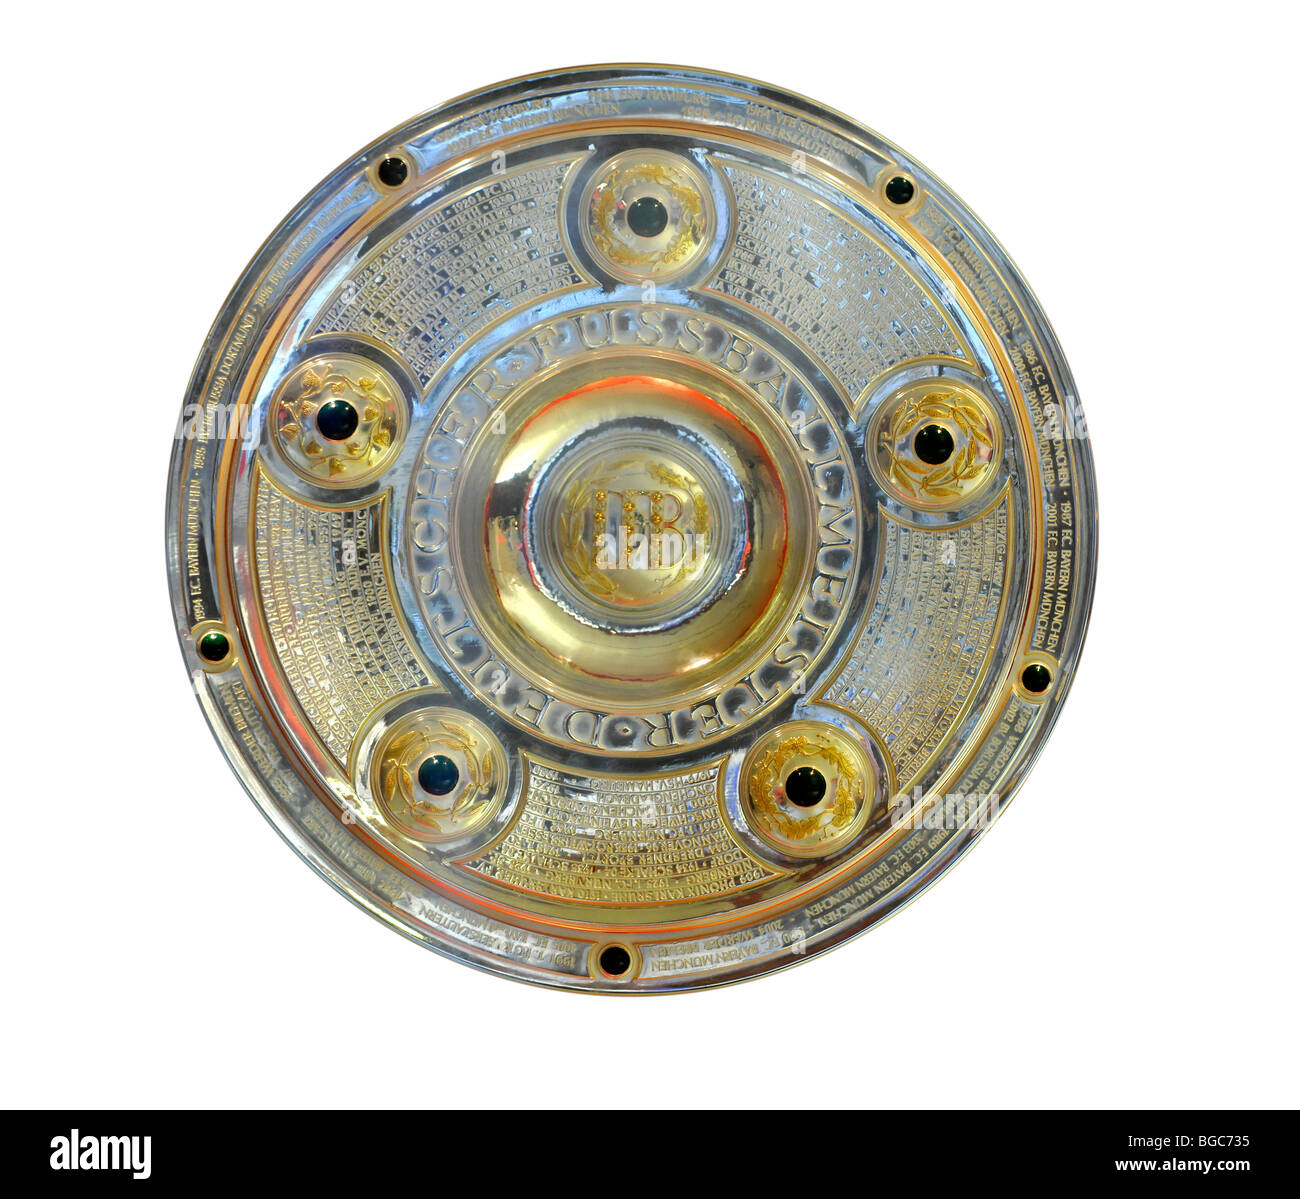 Meisterschale, Deutsche Bundesliga deutsche Fußball Liga Meisterschale,  Ausschnitt Stockfotografie - Alamy